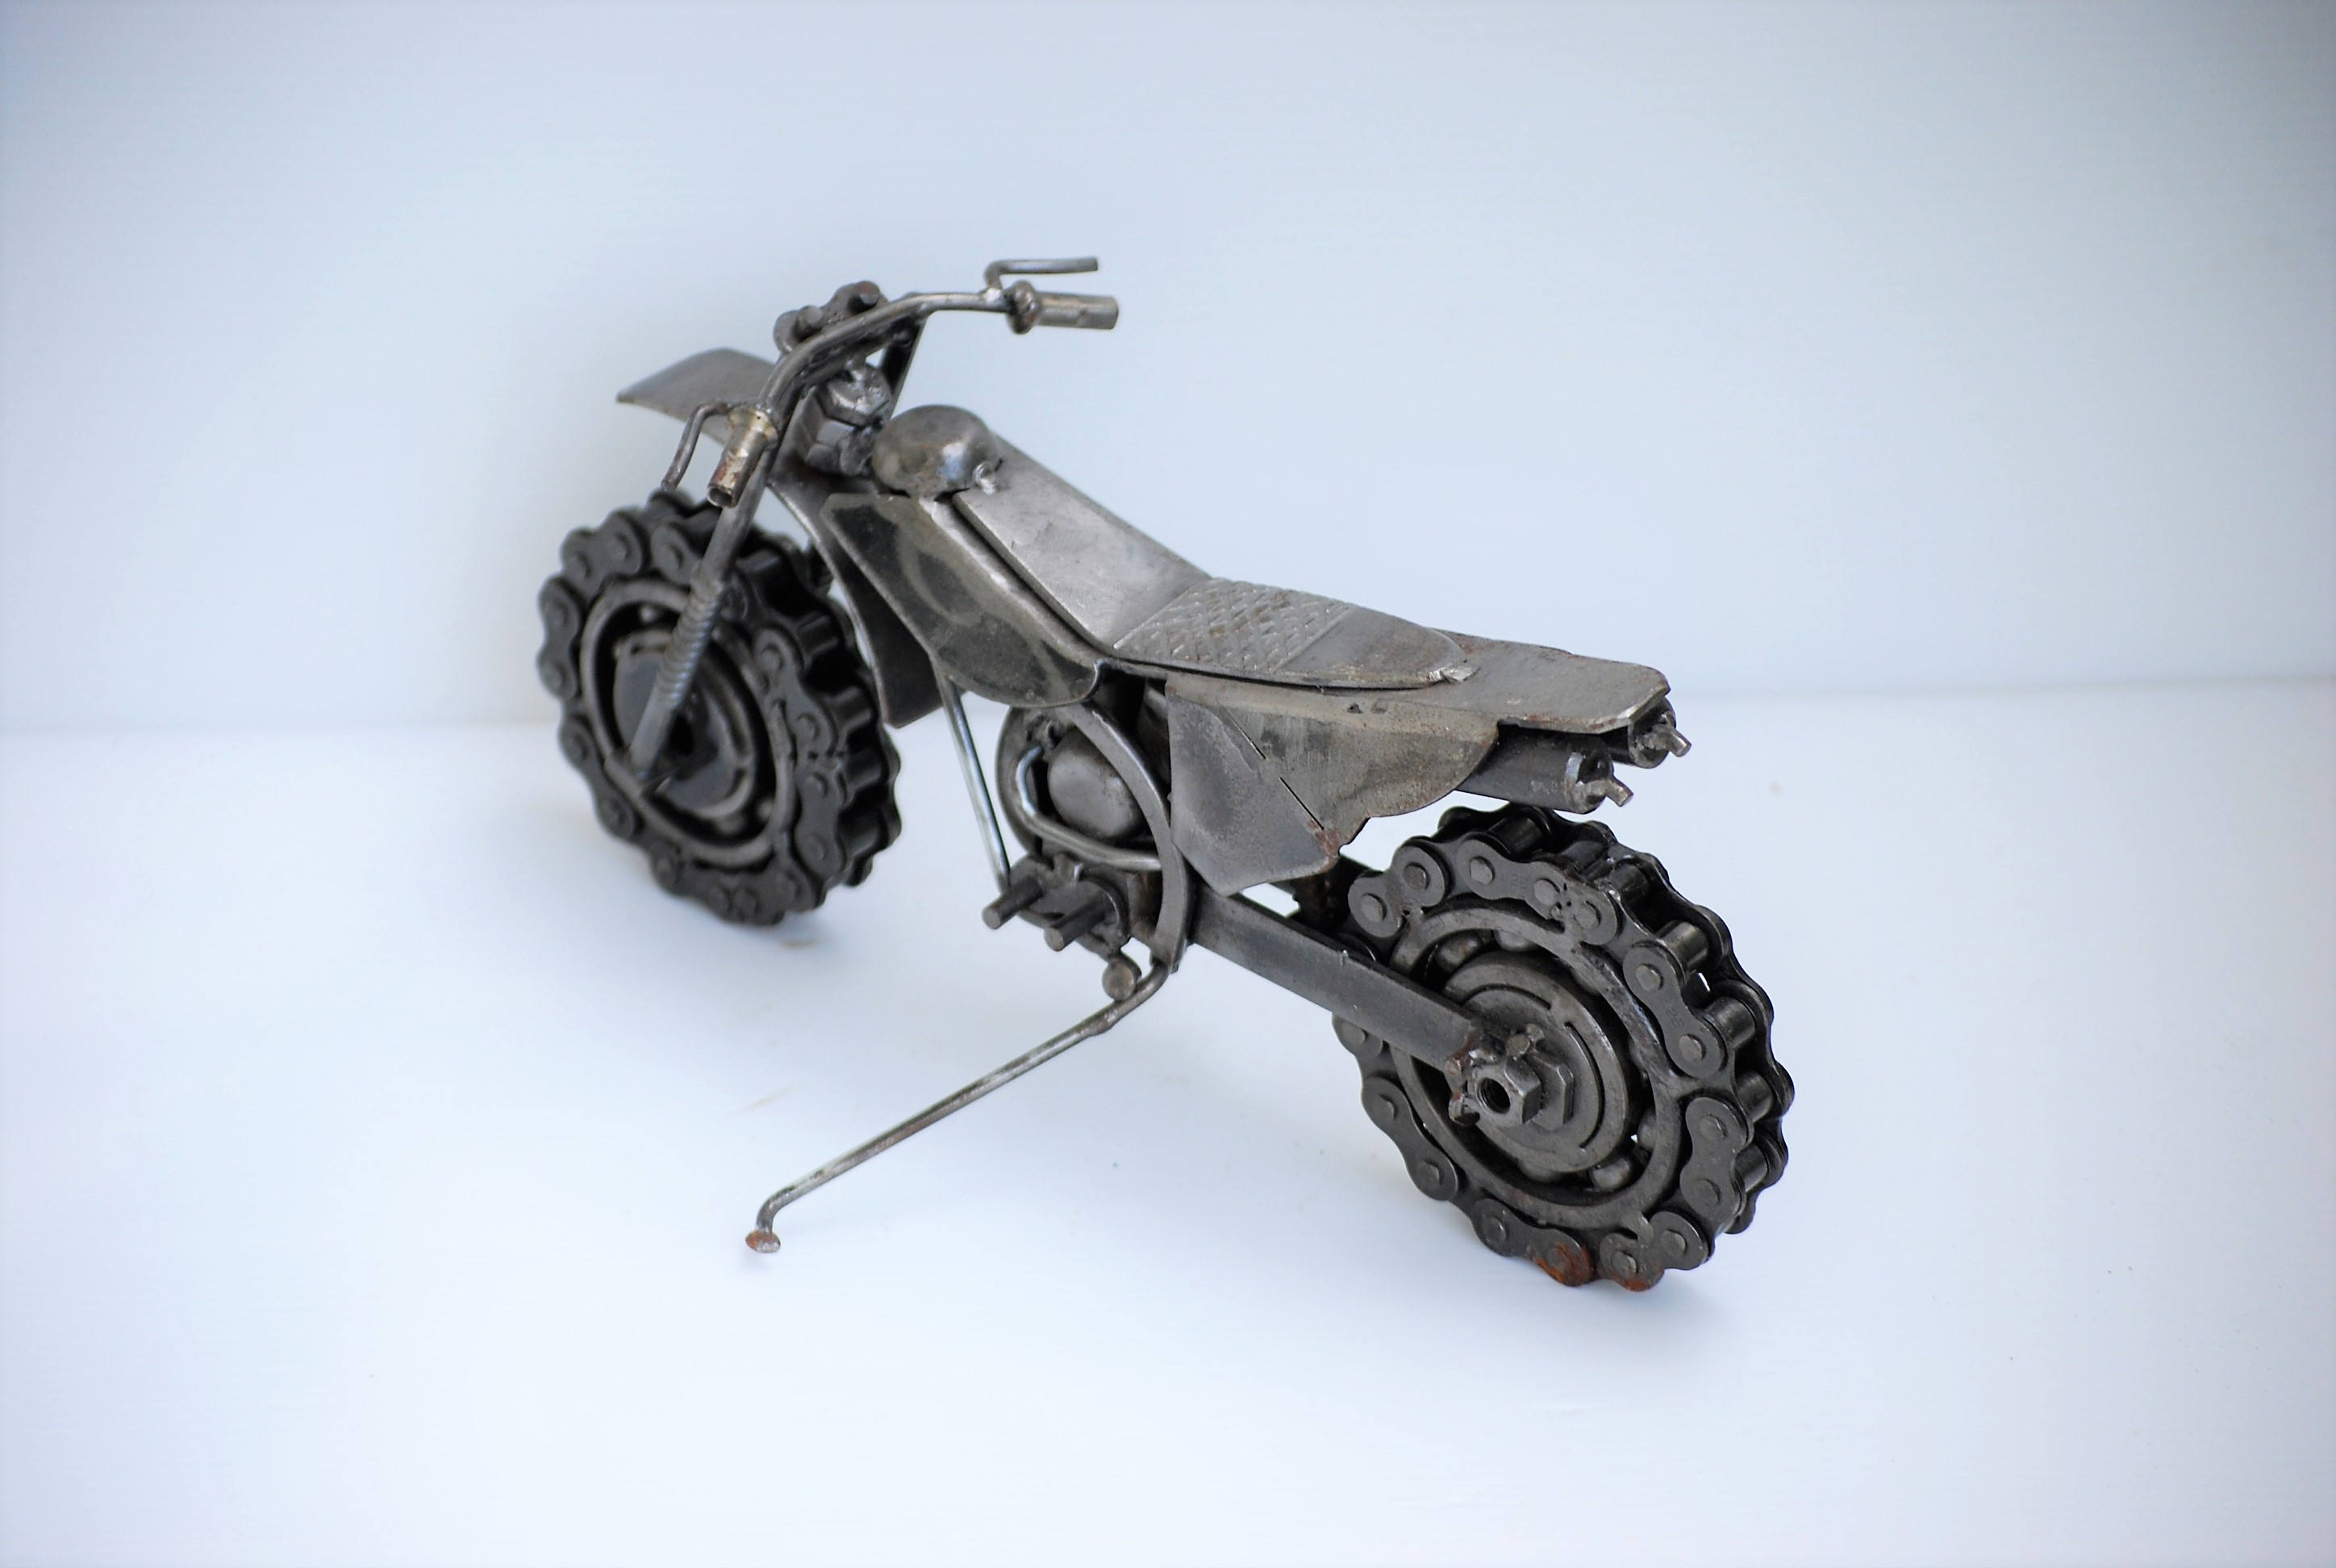 Modèle de moto en métal Figurine de moto classique cadeau d'anniversaire  décor artisanat ornement pour Style B 14cmx7cmx6cm